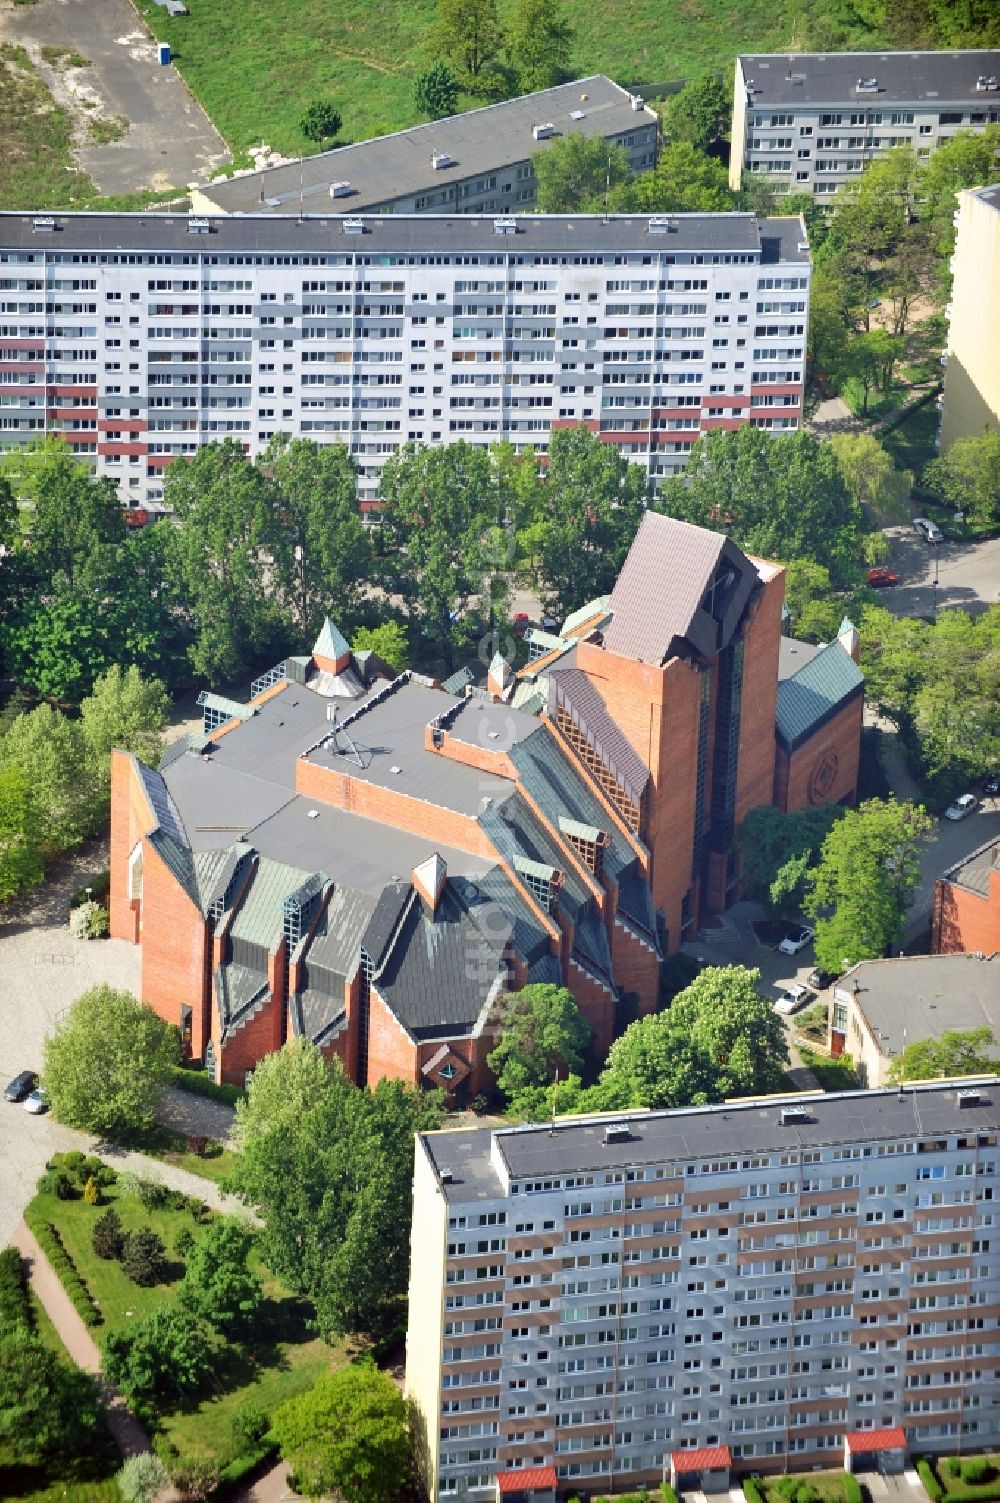 Breslau / Wroclaw von oben - Kirche Krolowej Pokoju in Breslau / Wroclaw Popowice in Poland